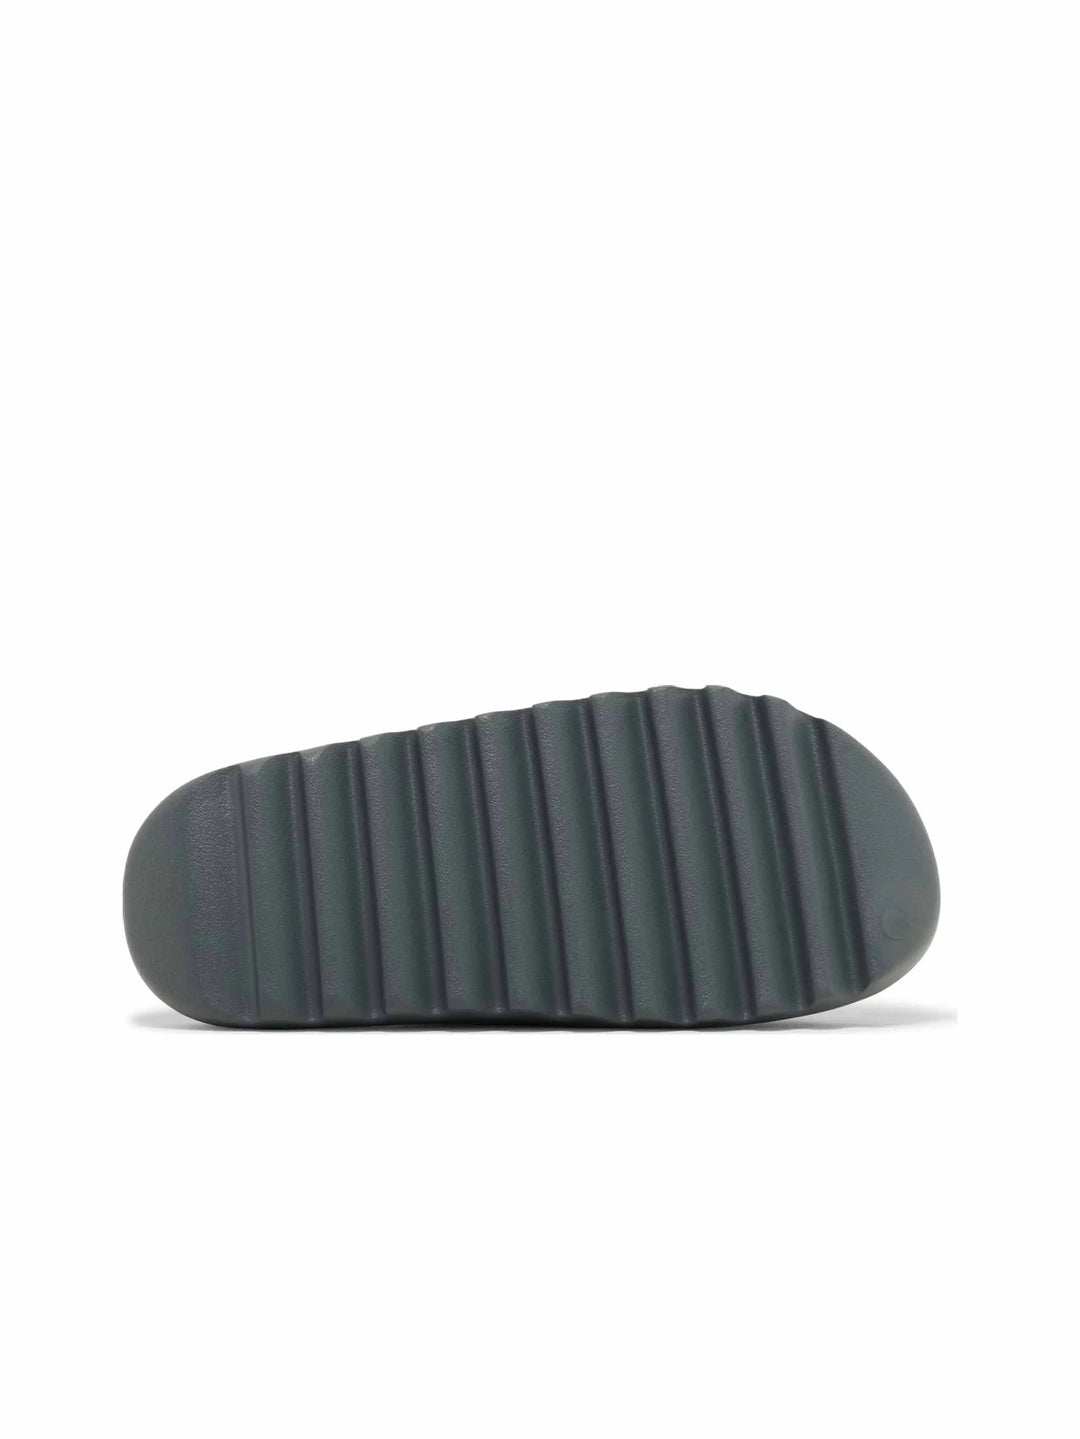 adidas Yeezy Slide Slate Marine - Prior